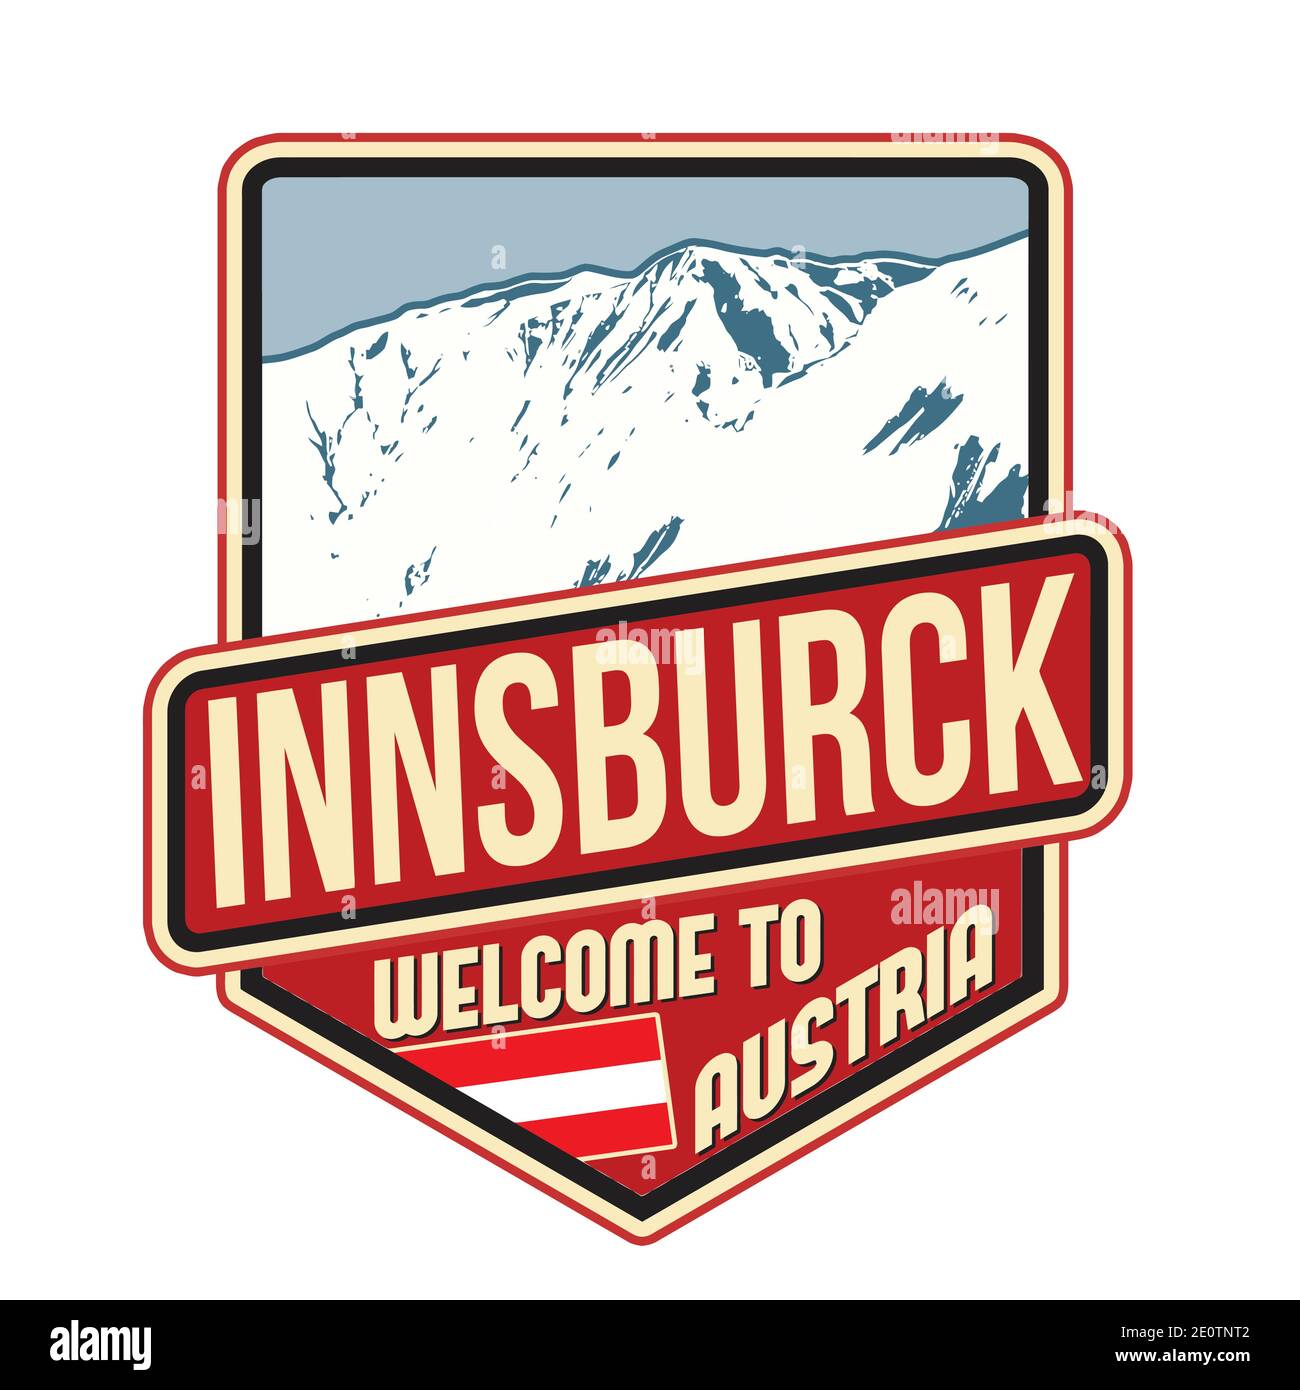 Innsburck travel sticker on white background, vector illustration Stock Vector